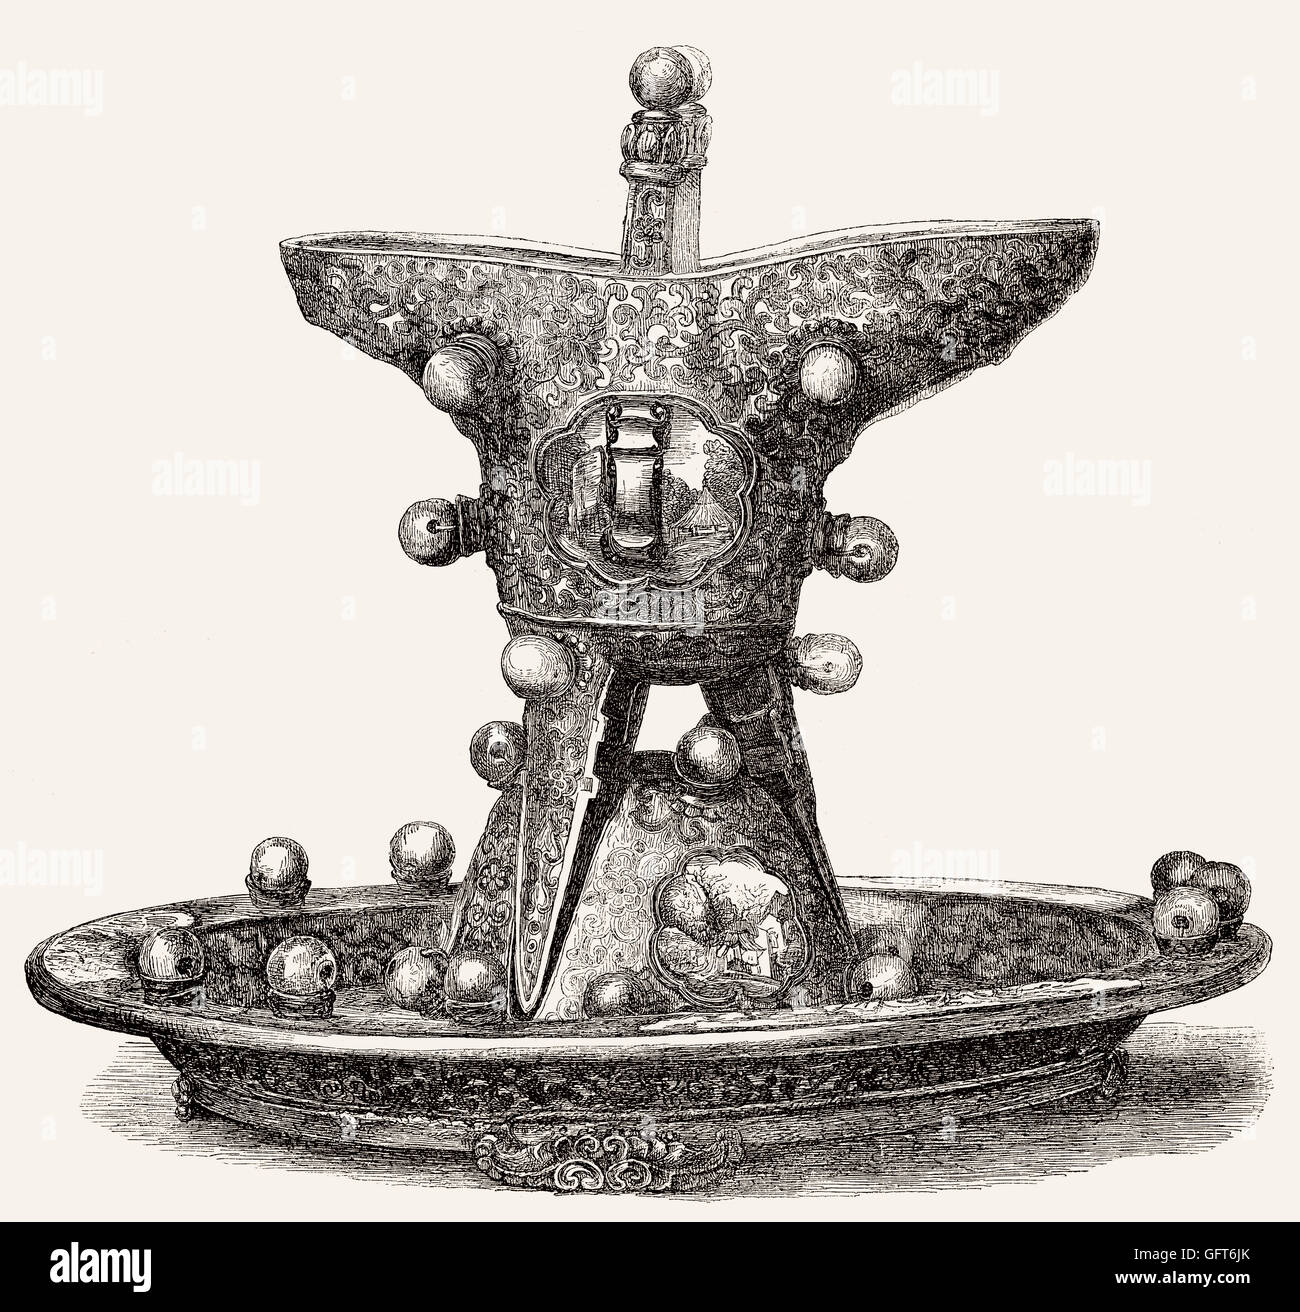 Adornado libération bowl del Emperador Qianlong, 1711-1799, de la dinastía Qing Foto de stock